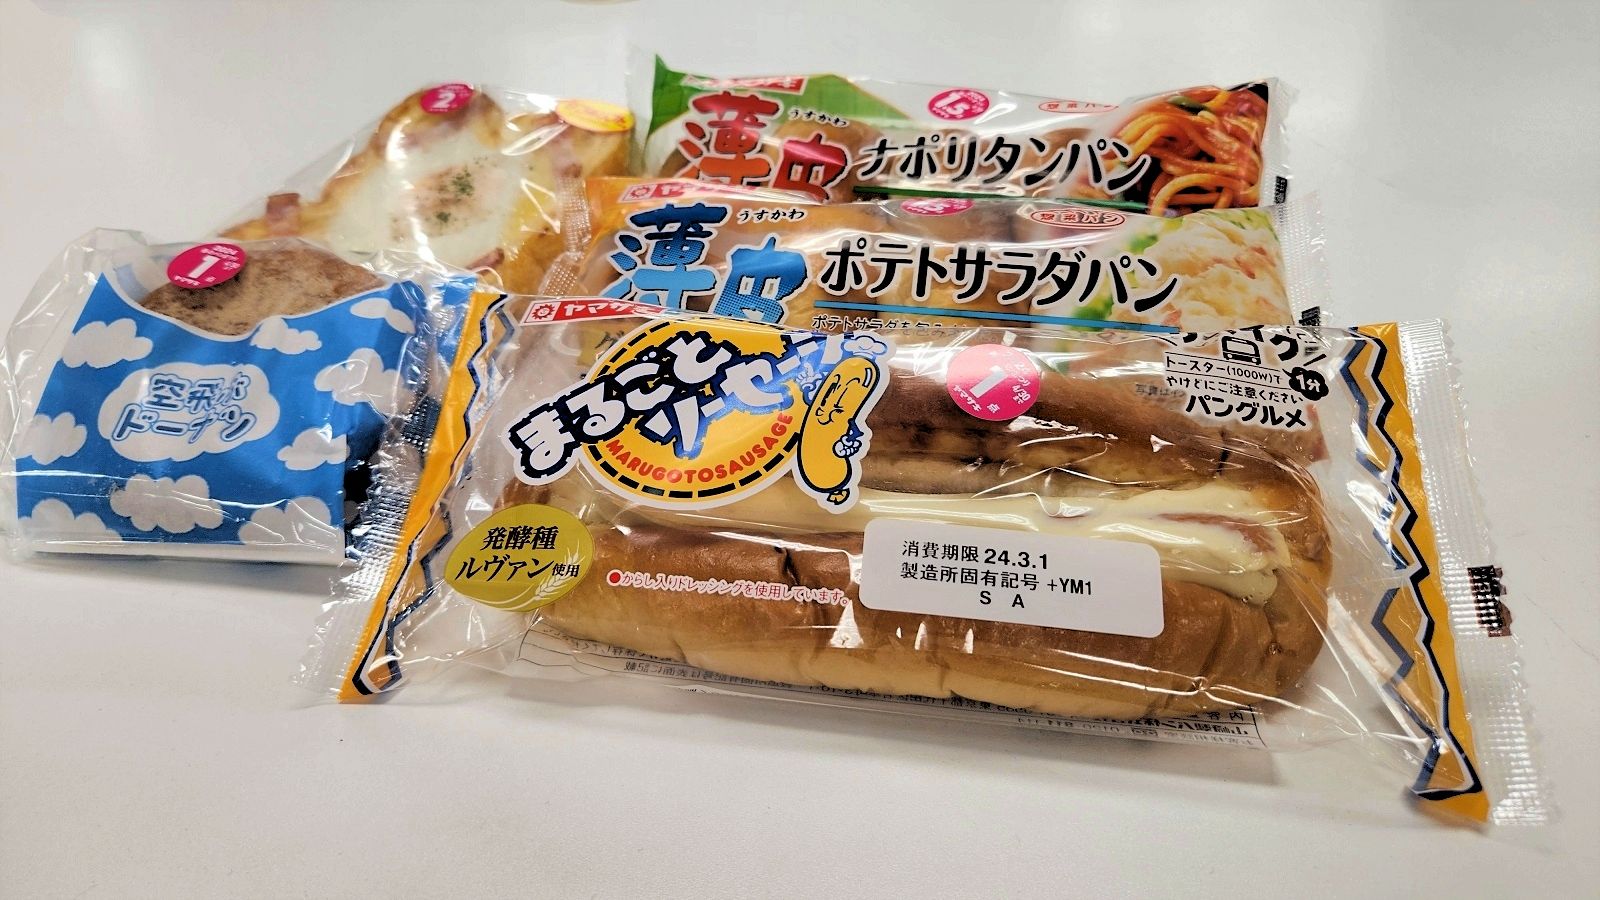 発売37年目｢まるごとソーセージ｣過去最高のナゼ 総菜パン人気で山崎パンの商品戦略に異変？